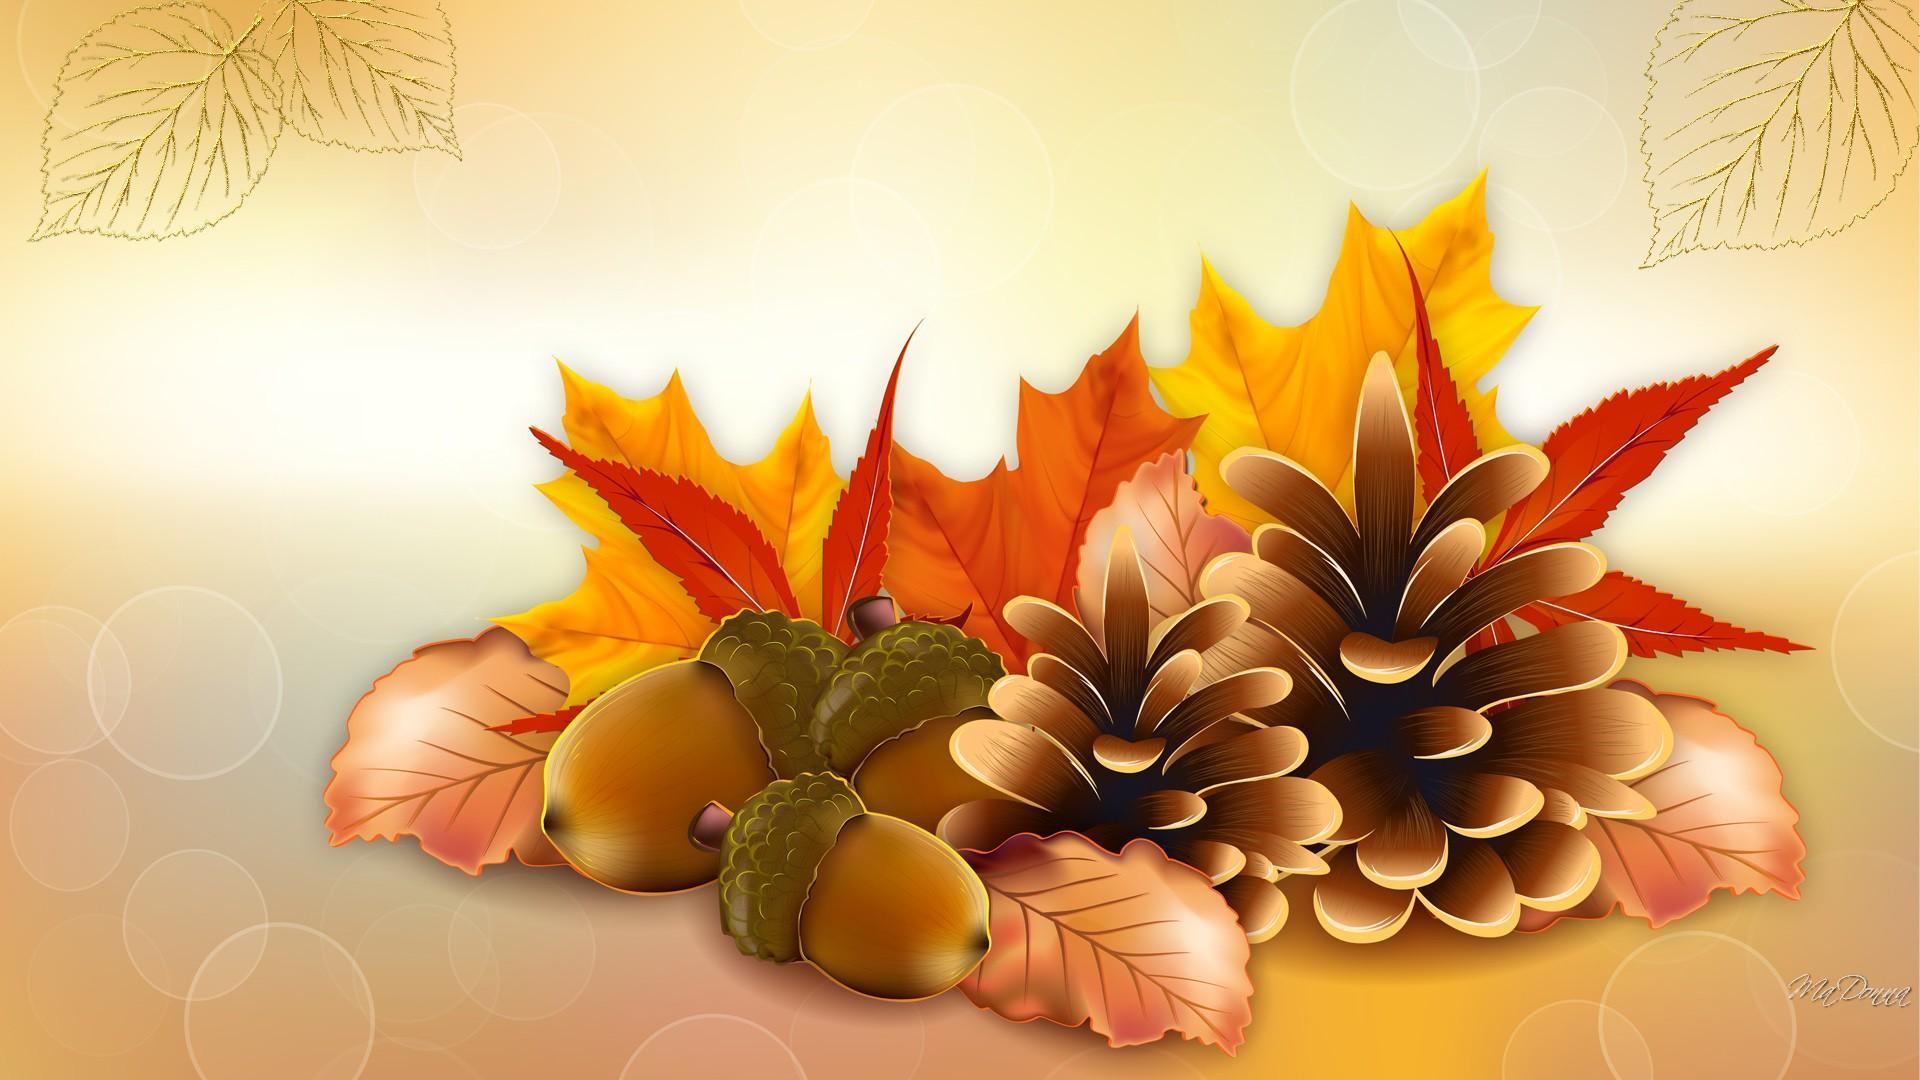 Thanksgiving Fall HD desktop wallpaper, Widescreen, High